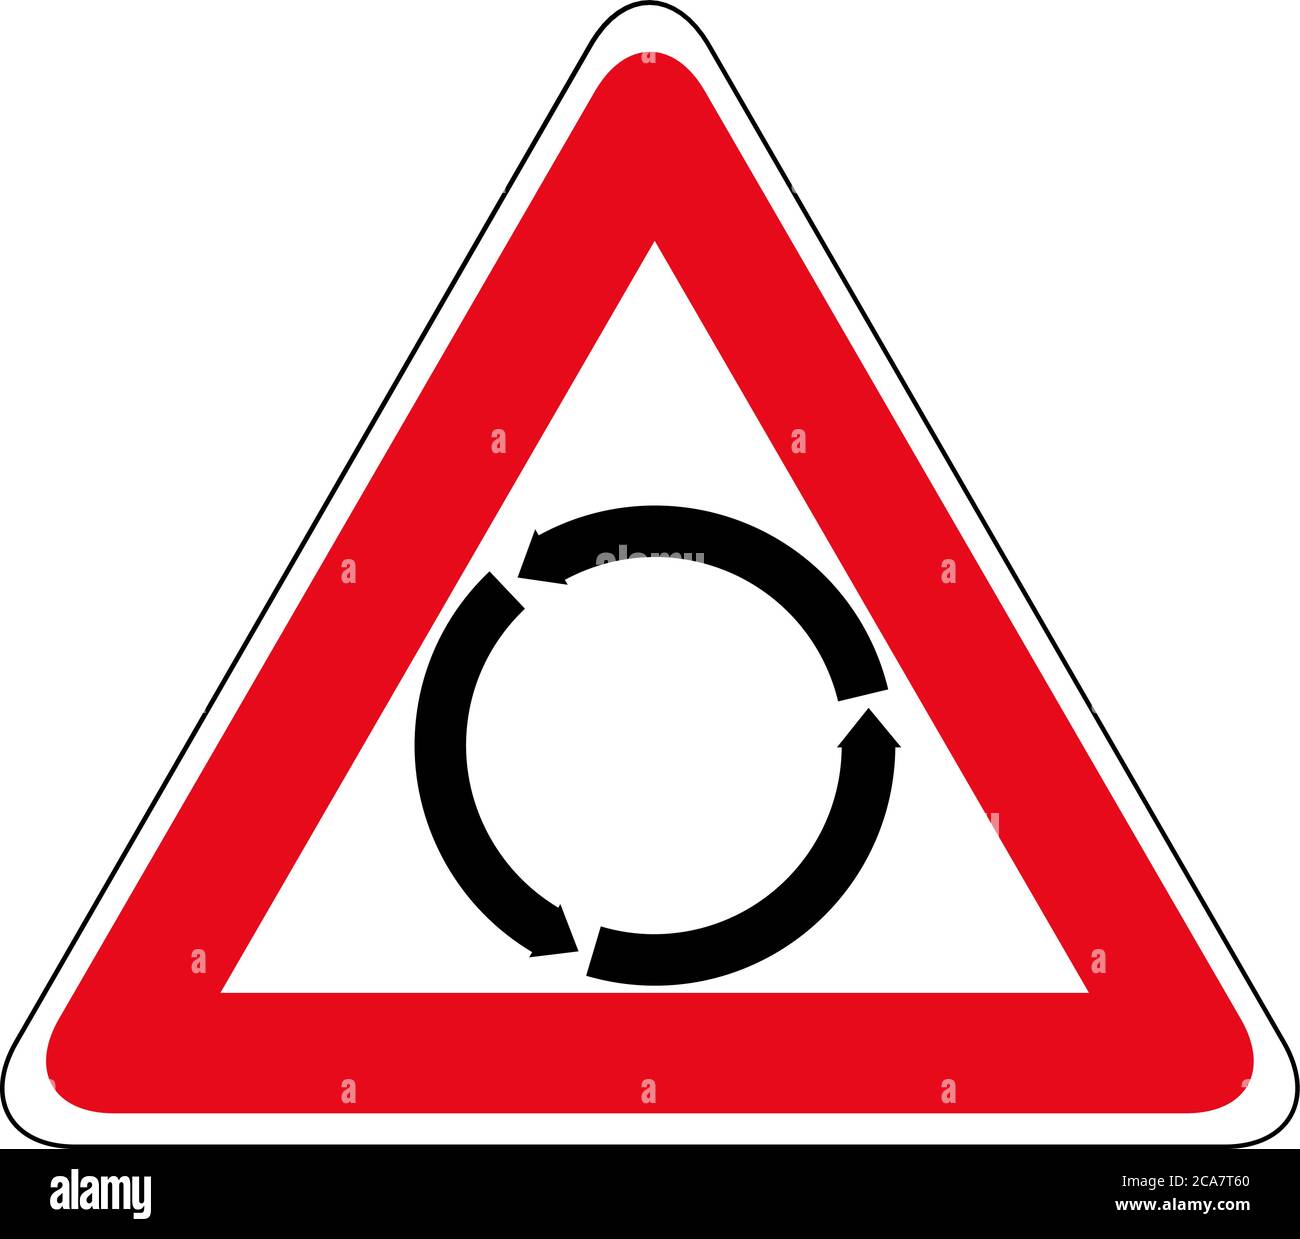 Kreisverkehr Umfahrtschild Linie Symbol. Kreisverkehr Straße. Kreisel Schild flaches Symbol. Symbol für kreisförmiges Straßenschild Stock Vektor